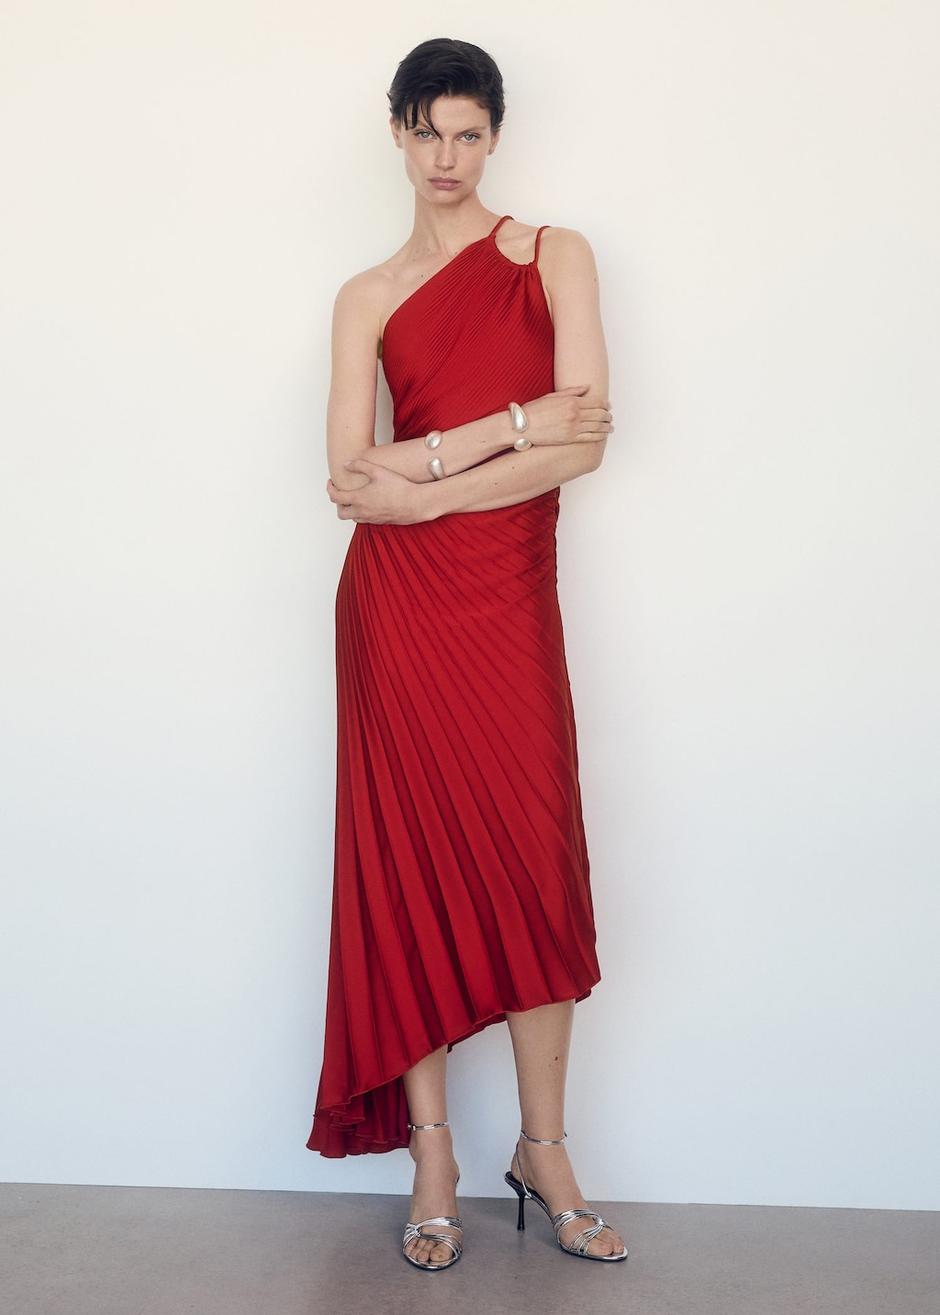 Foto: Mango, viralna asimetrična haljina u crvenoj boji | Autor: Mango